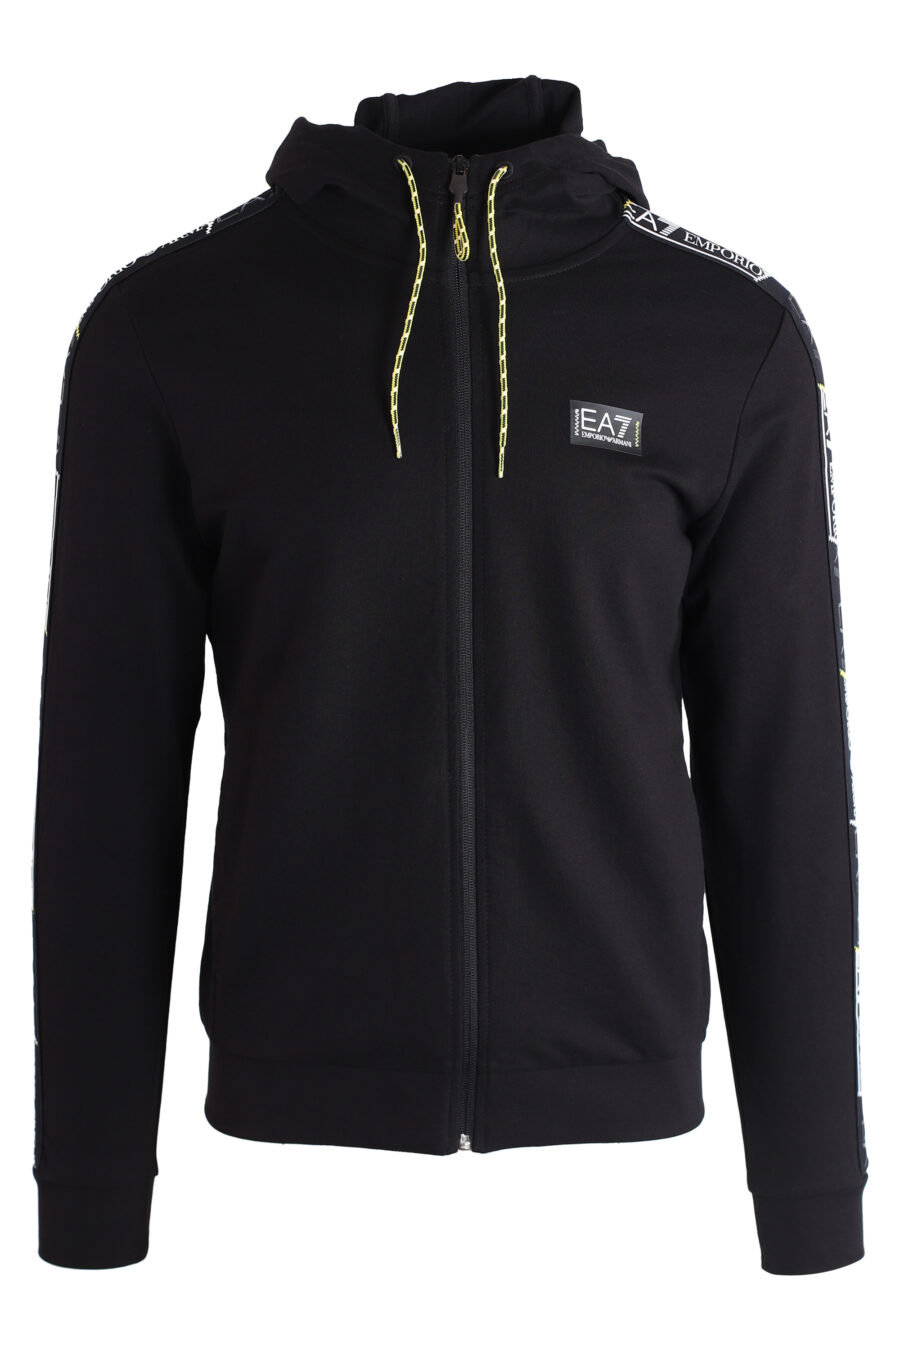 Schwarzes Kapuzensweatshirt mit Reißverschluss und Logo an den Seiten - IMG 3186